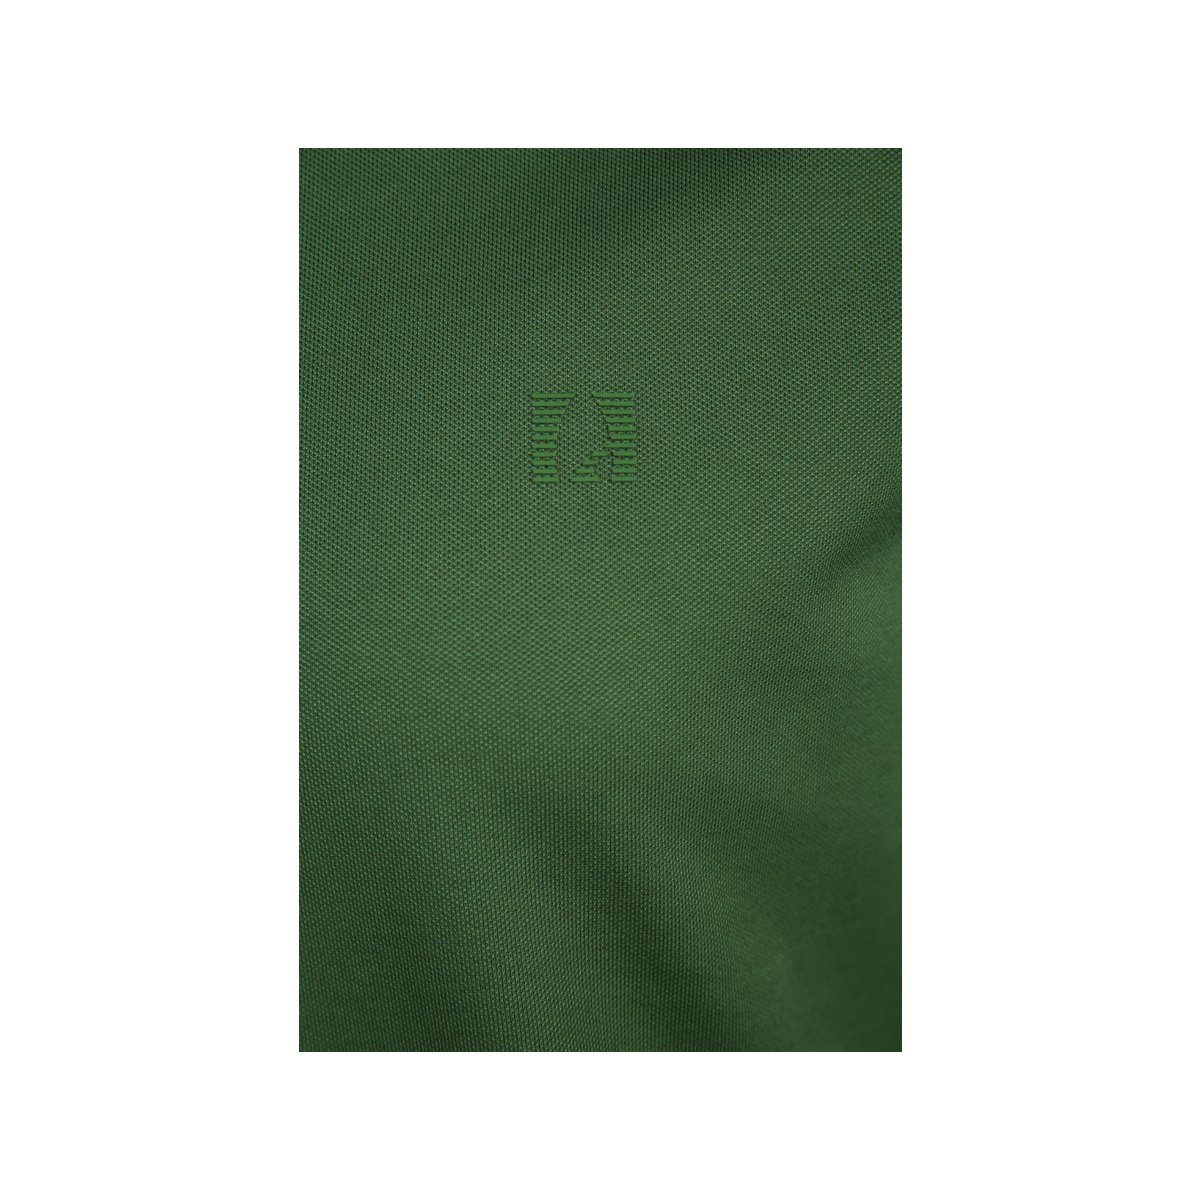 370-GRASGRUN grün RAGMAN (1-tlg) Poloshirt